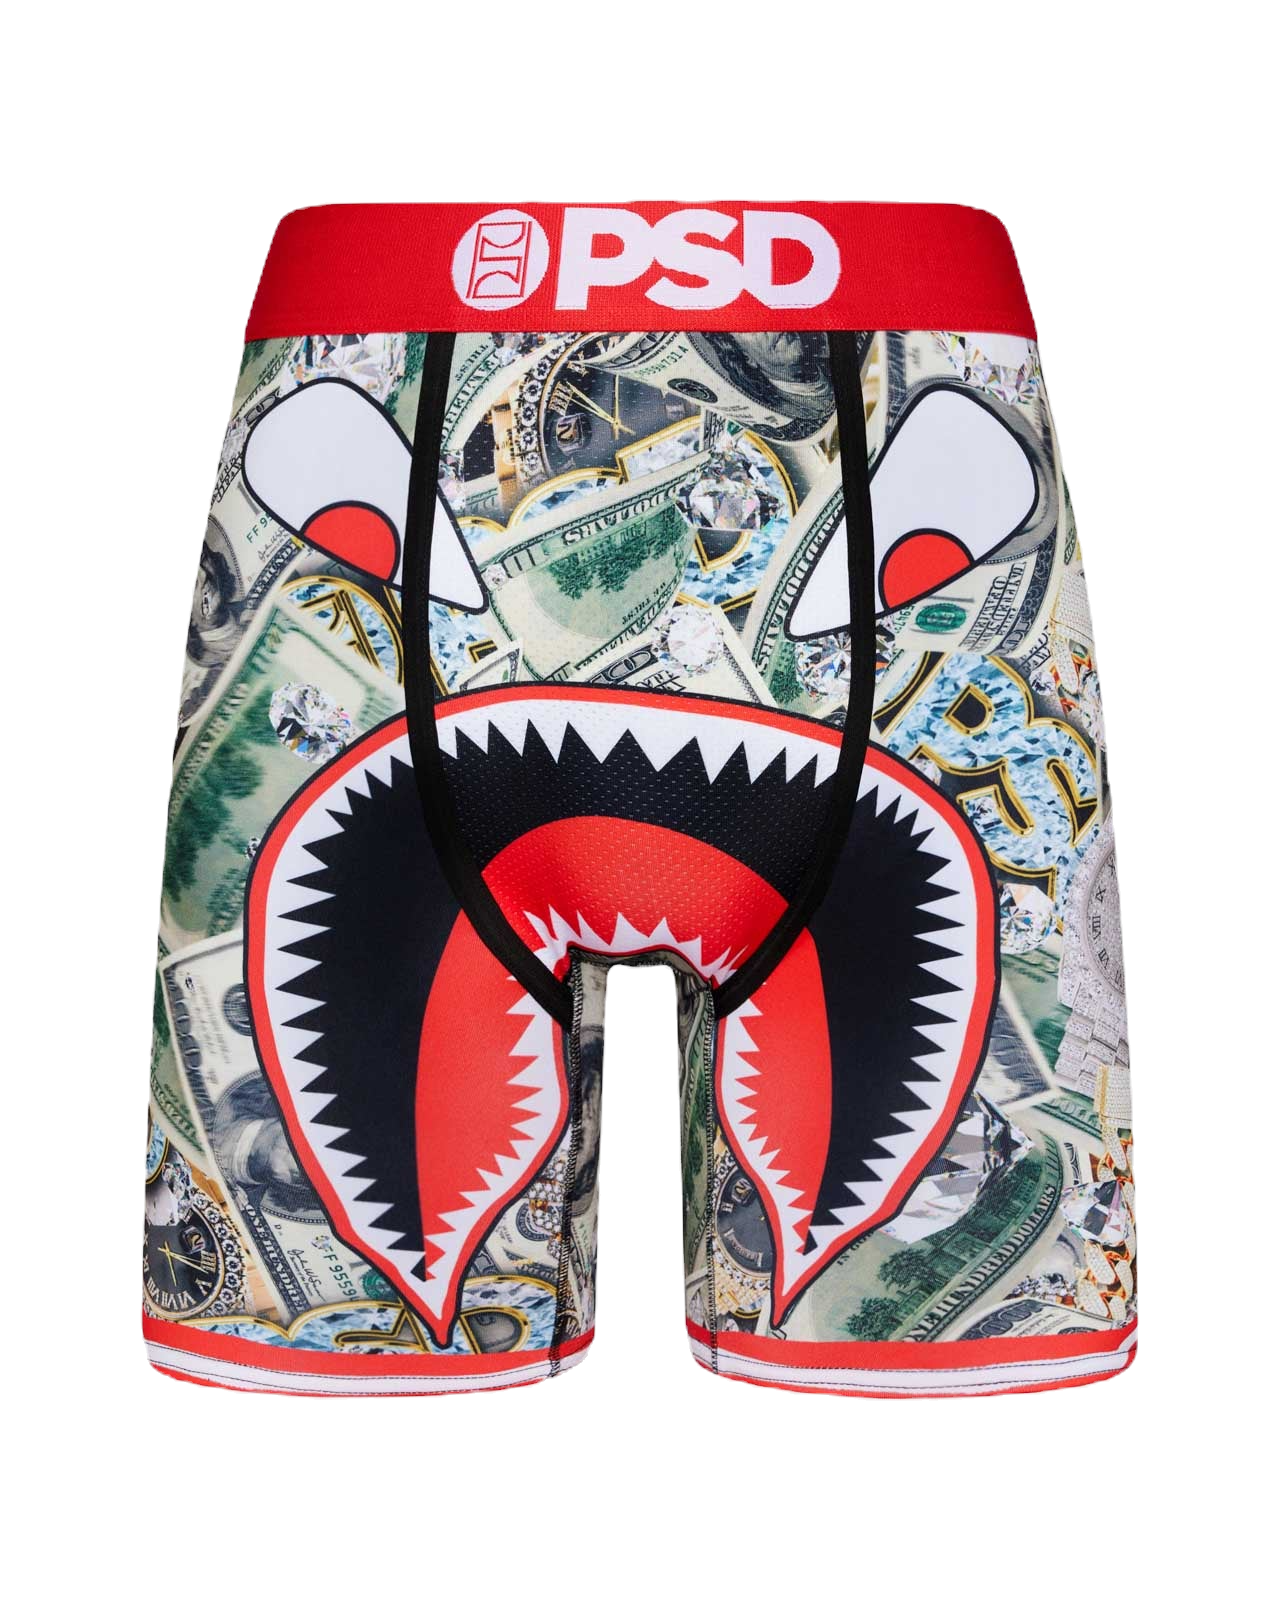 PSD "WF Stacks" Boxer Briefs